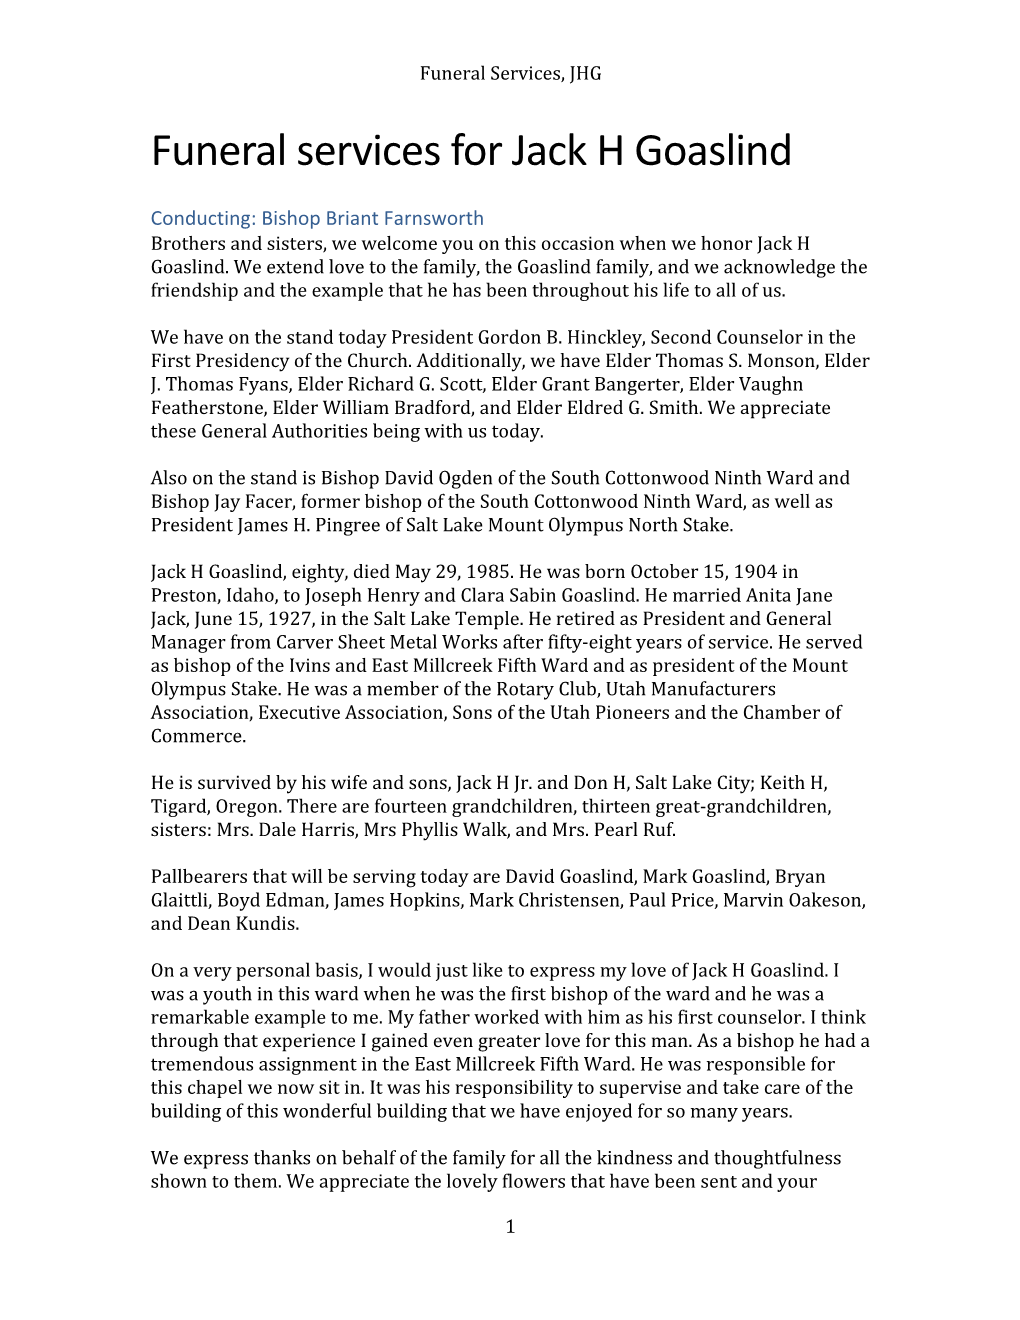 Funeral Services for Jack H Goaslind